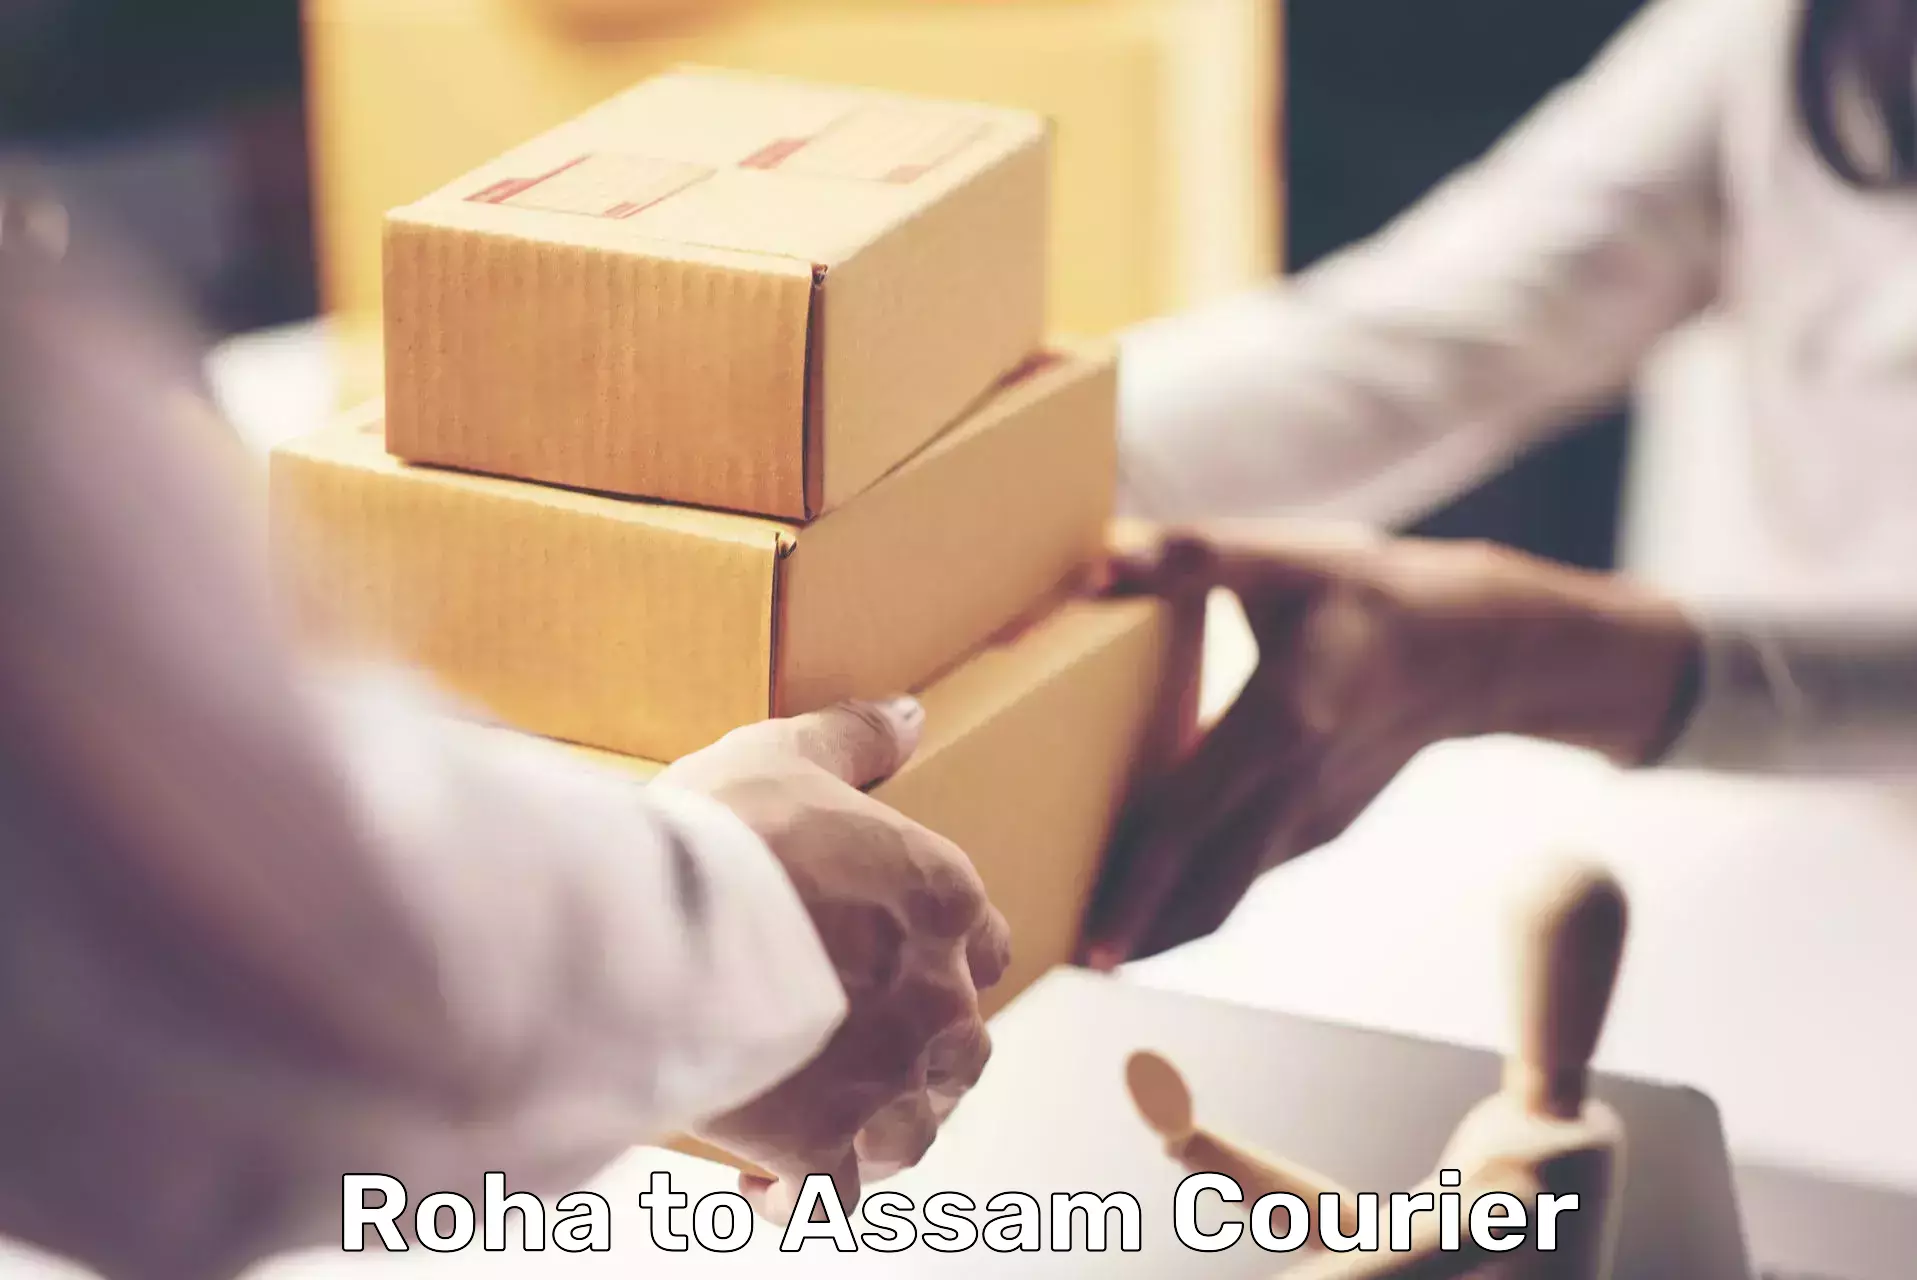 Budget-friendly shipping Roha to Dalgaon